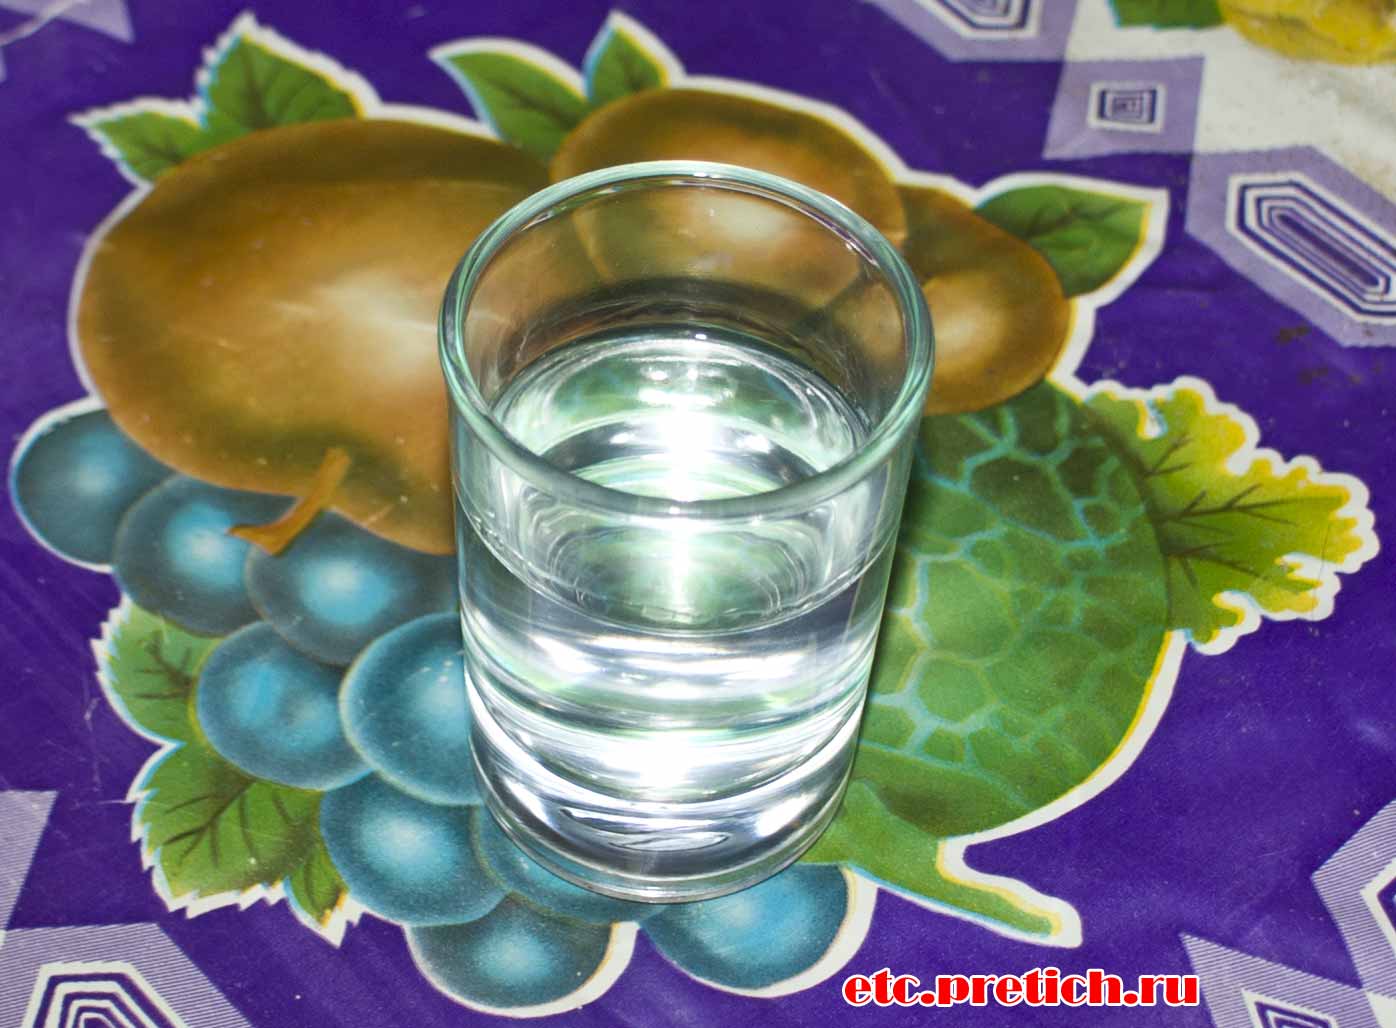 Водка из Казахстана Medved vodka Preved, полное описание, впечатление и отзыв